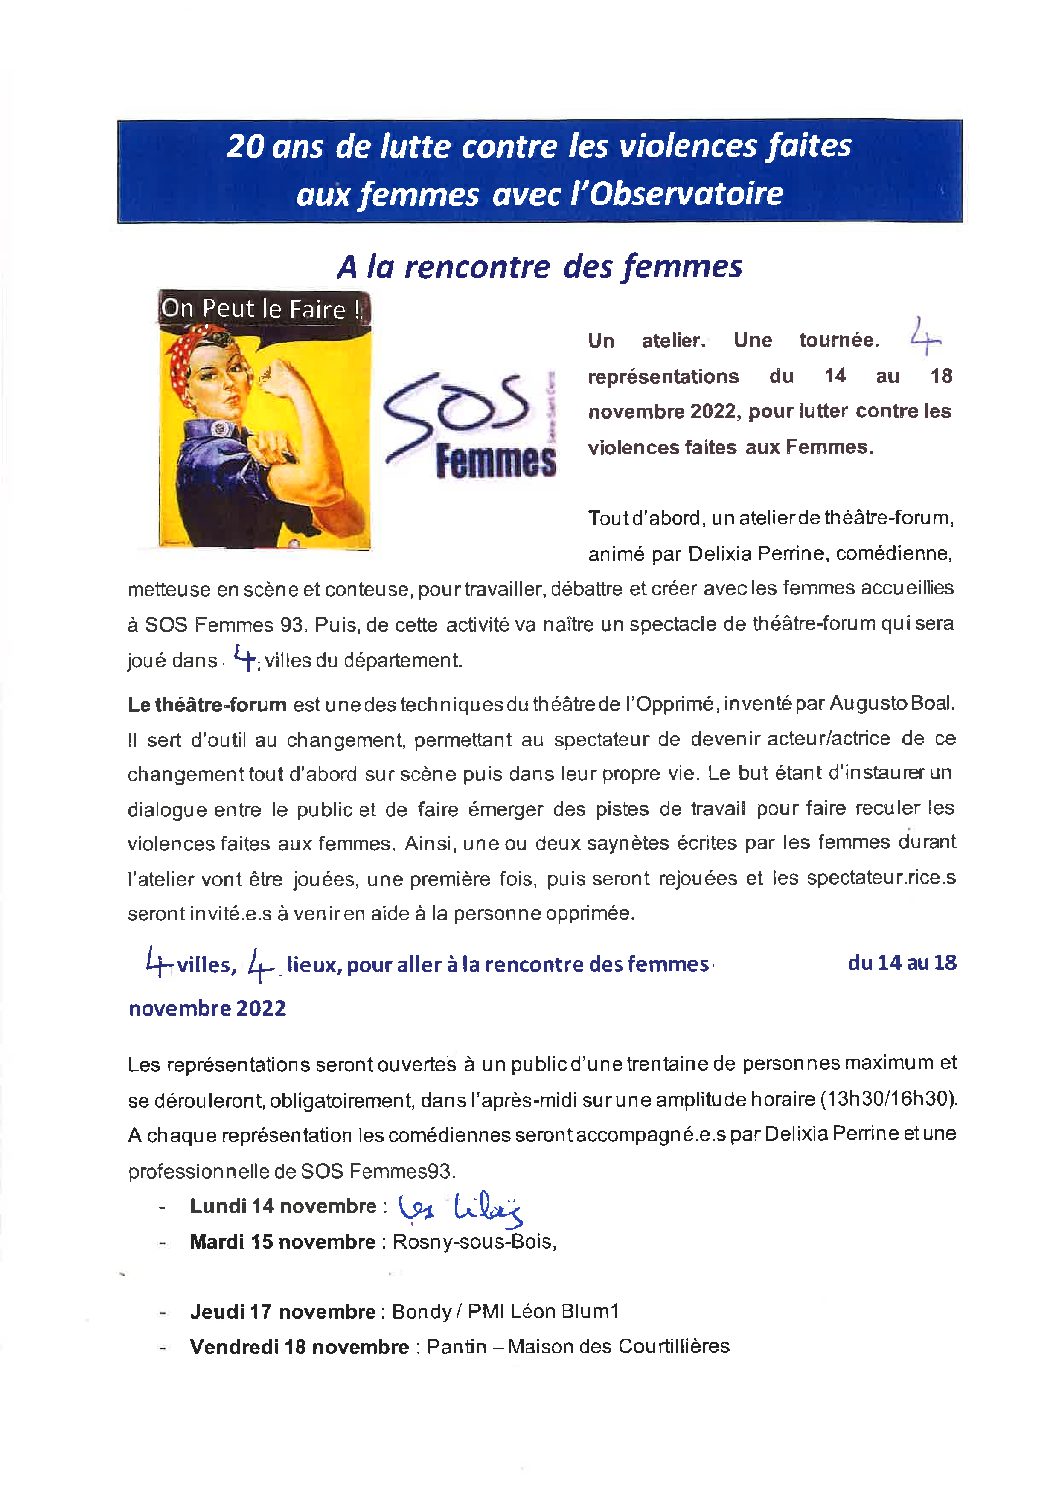 Du 14 au 18 novembre 2022 : Représentations publiques de saynettes écrites et jouées par des femmes accueillies à SOS Femmes en Seine-Saint-Denis